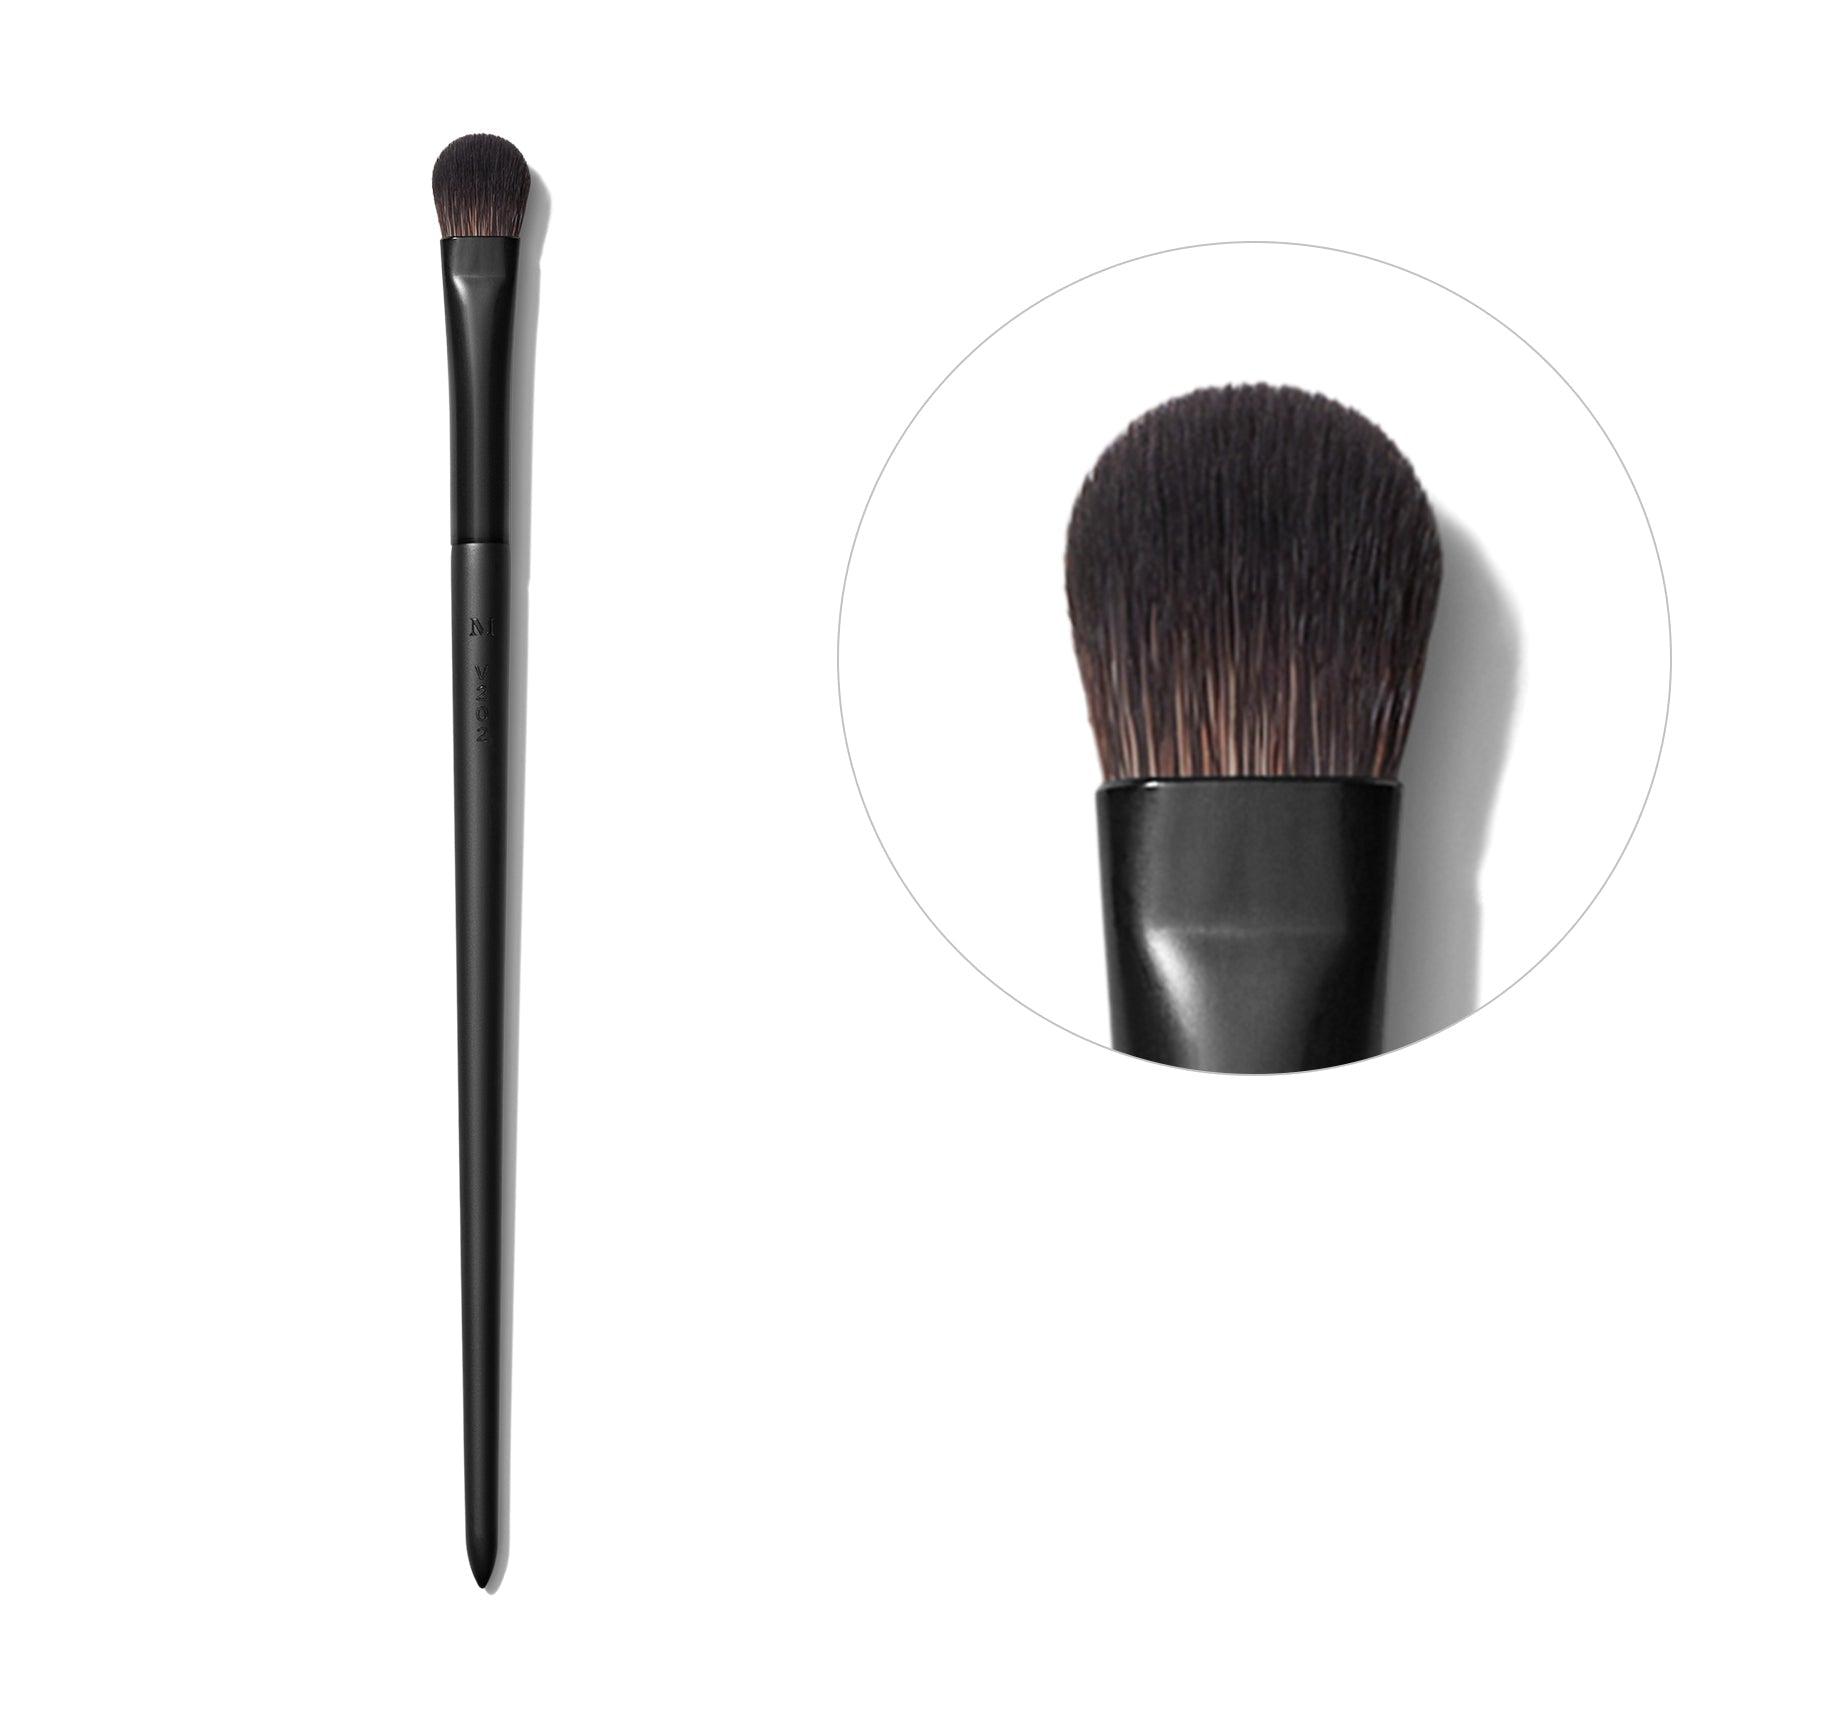 V202 Multifunctional Packing Eyeshadow Brush - Image 1